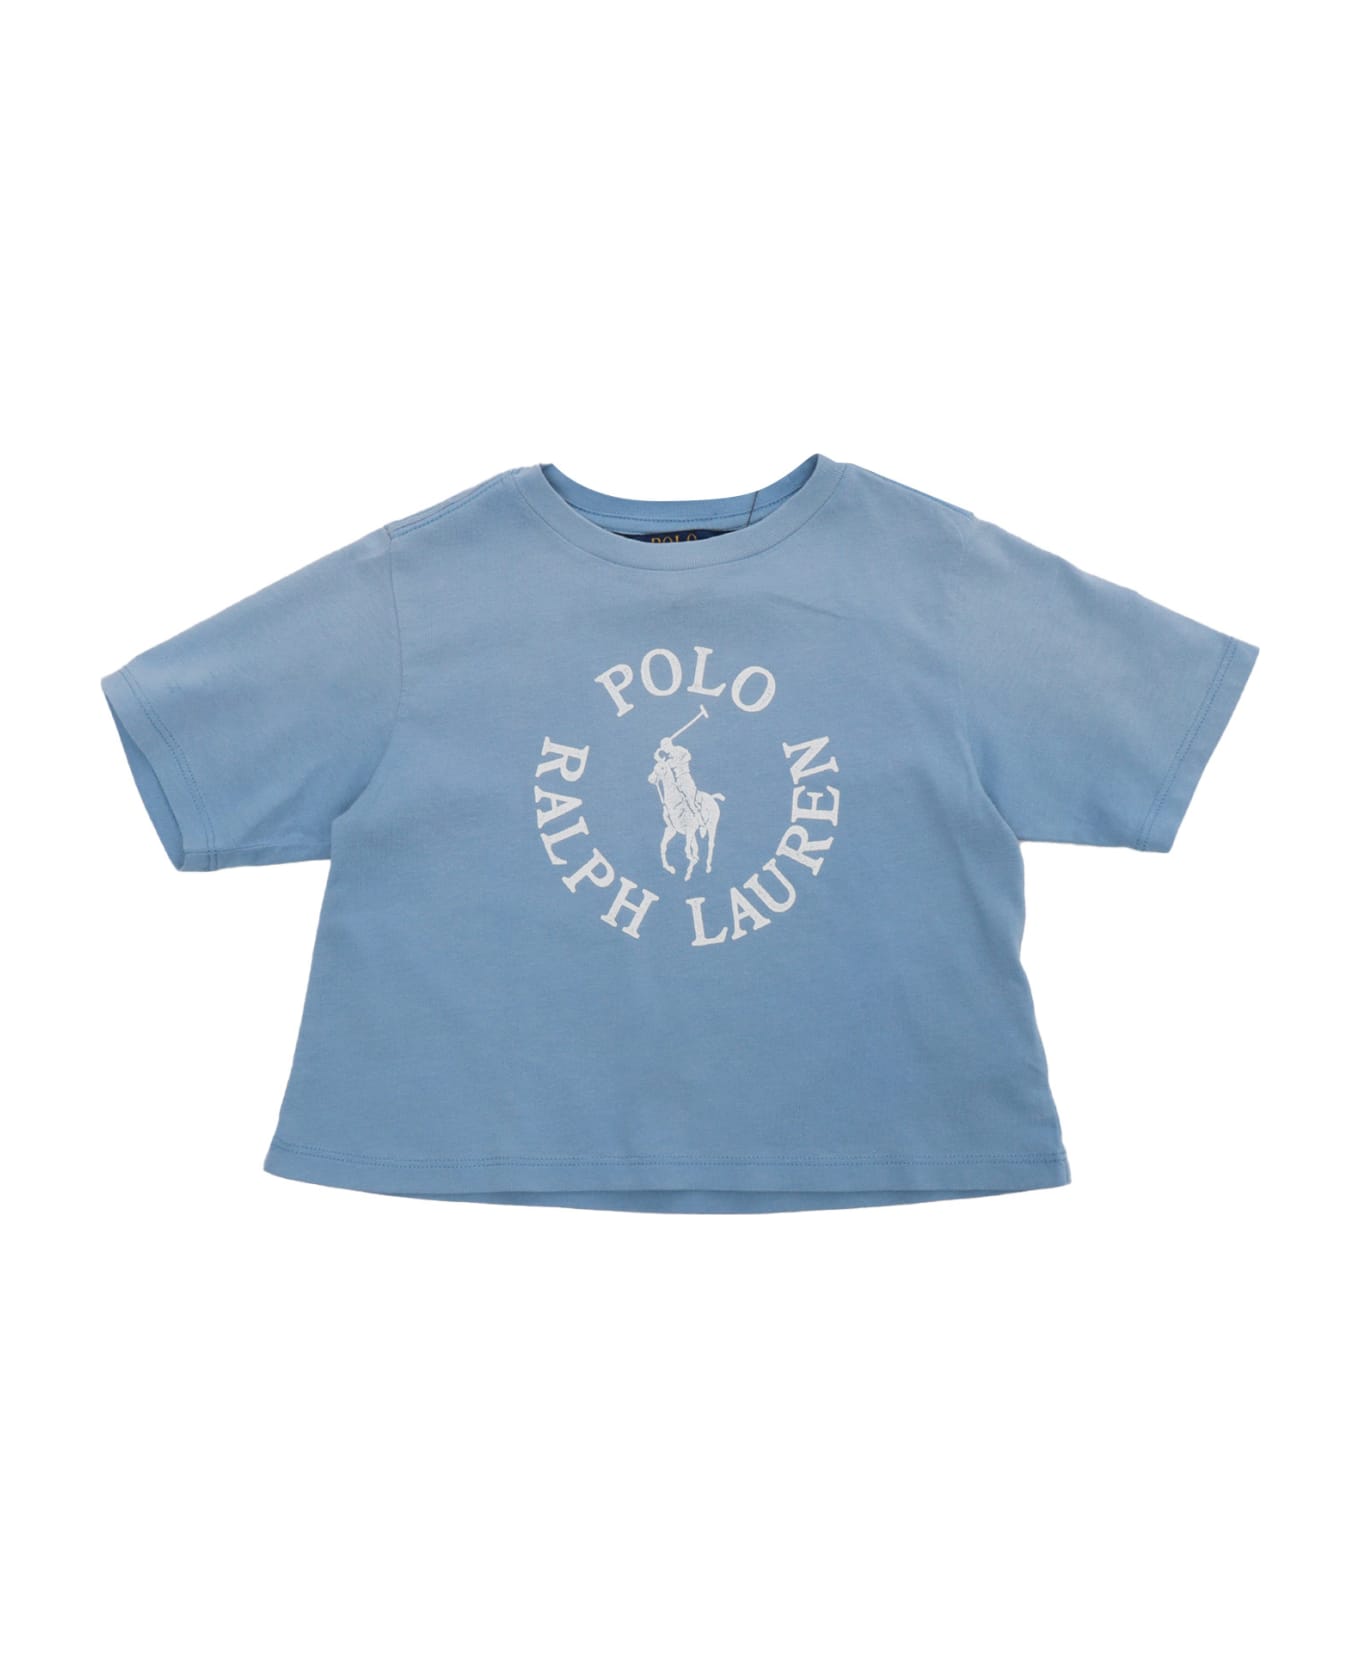 Polo Ralph Lauren Light Blue T-shirt - BLUE